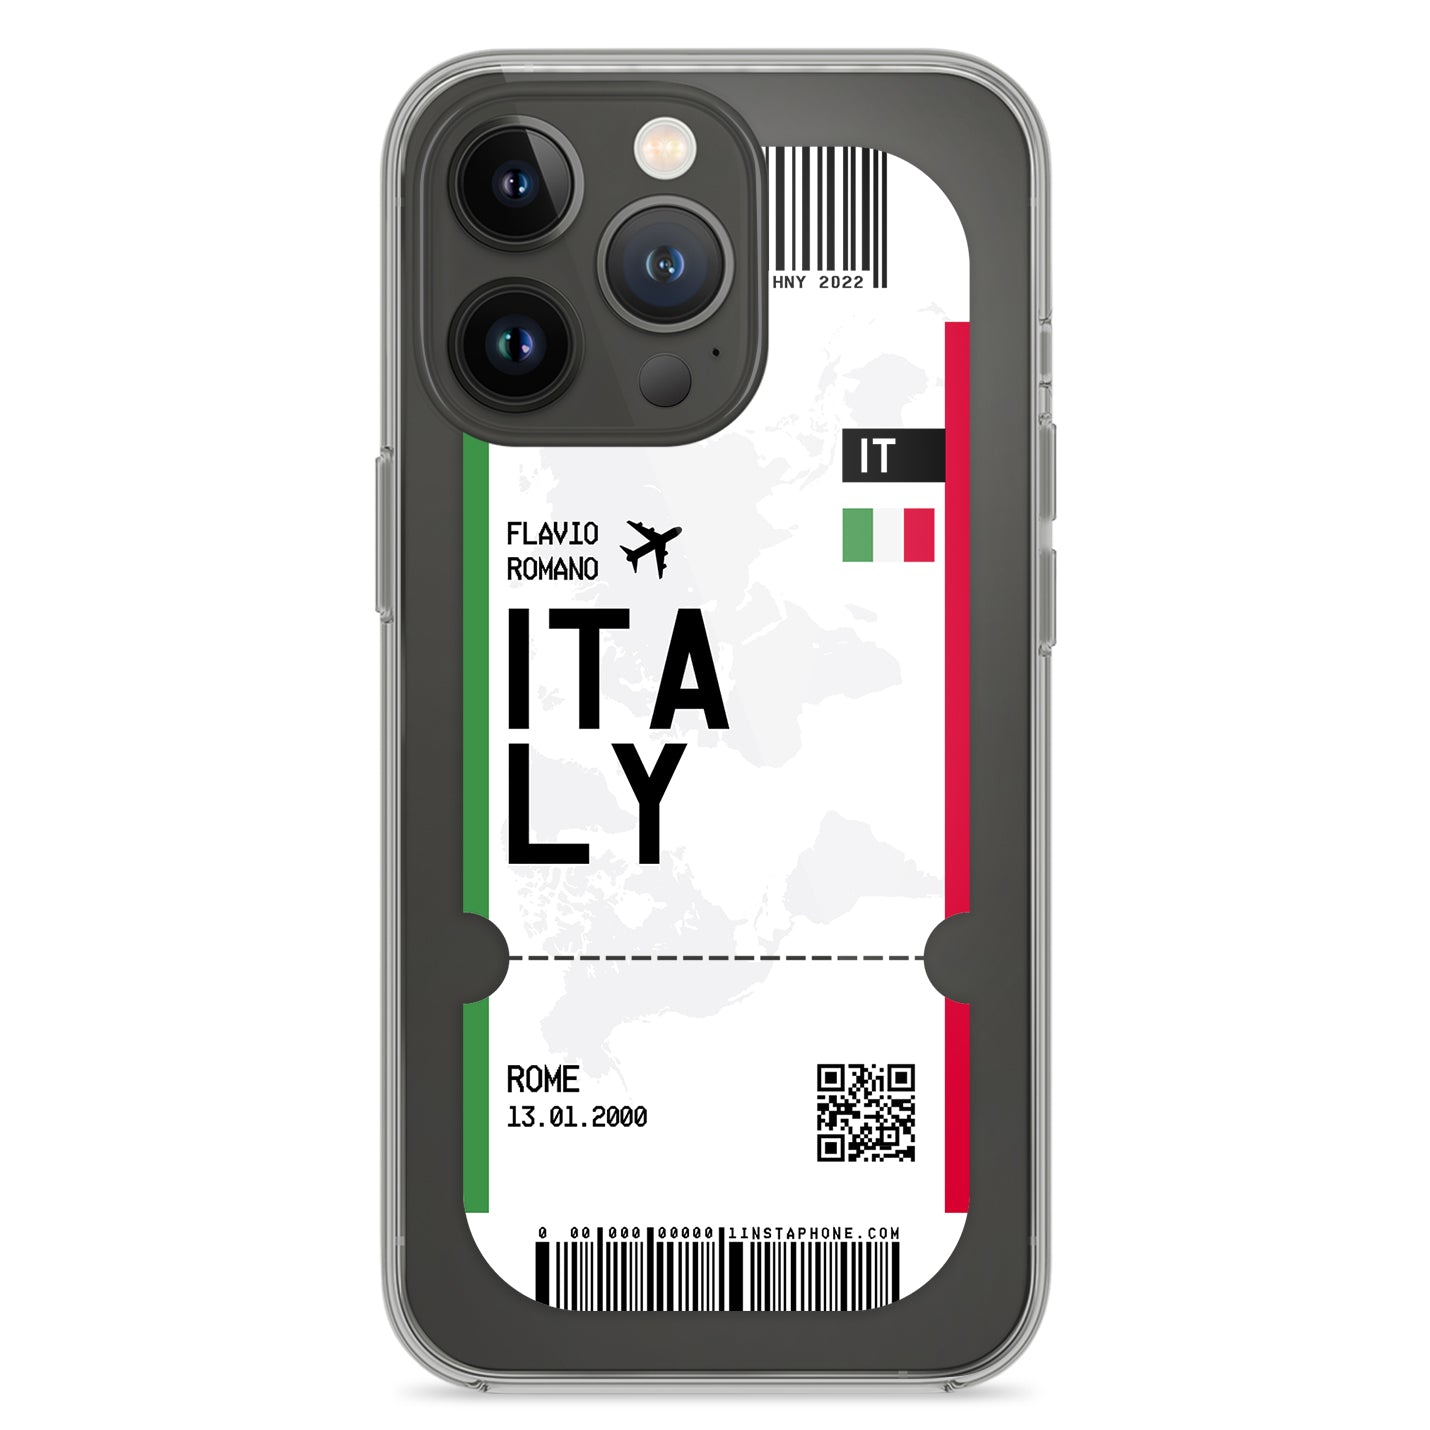 Handyhülle im Ticket Design - Italien - 1instaphone